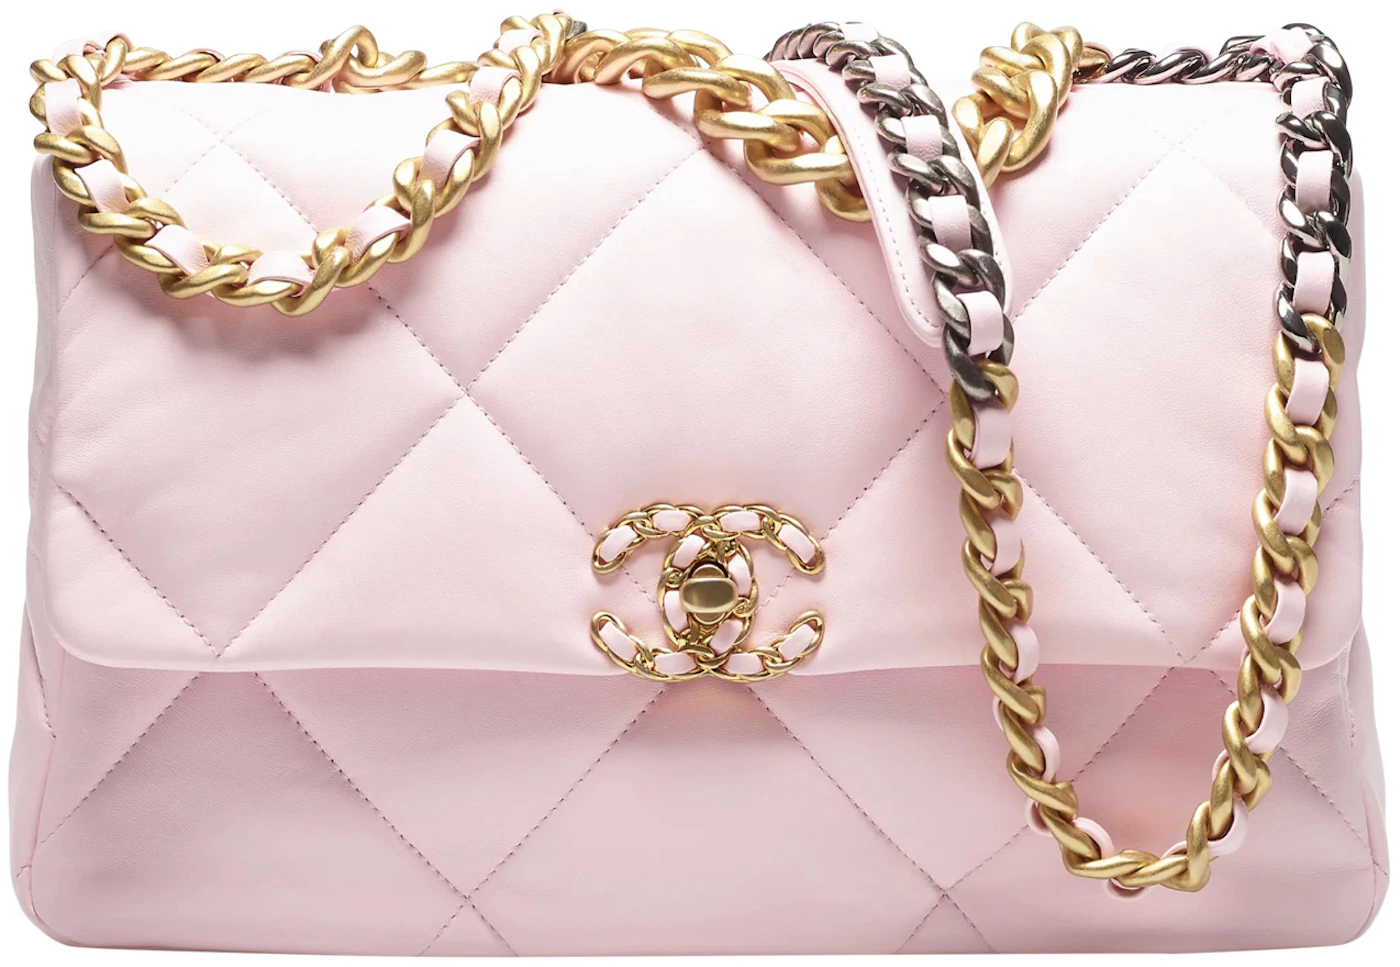 Chanel Bags - CHANEL 19 Large Handbag - Chanel Bags